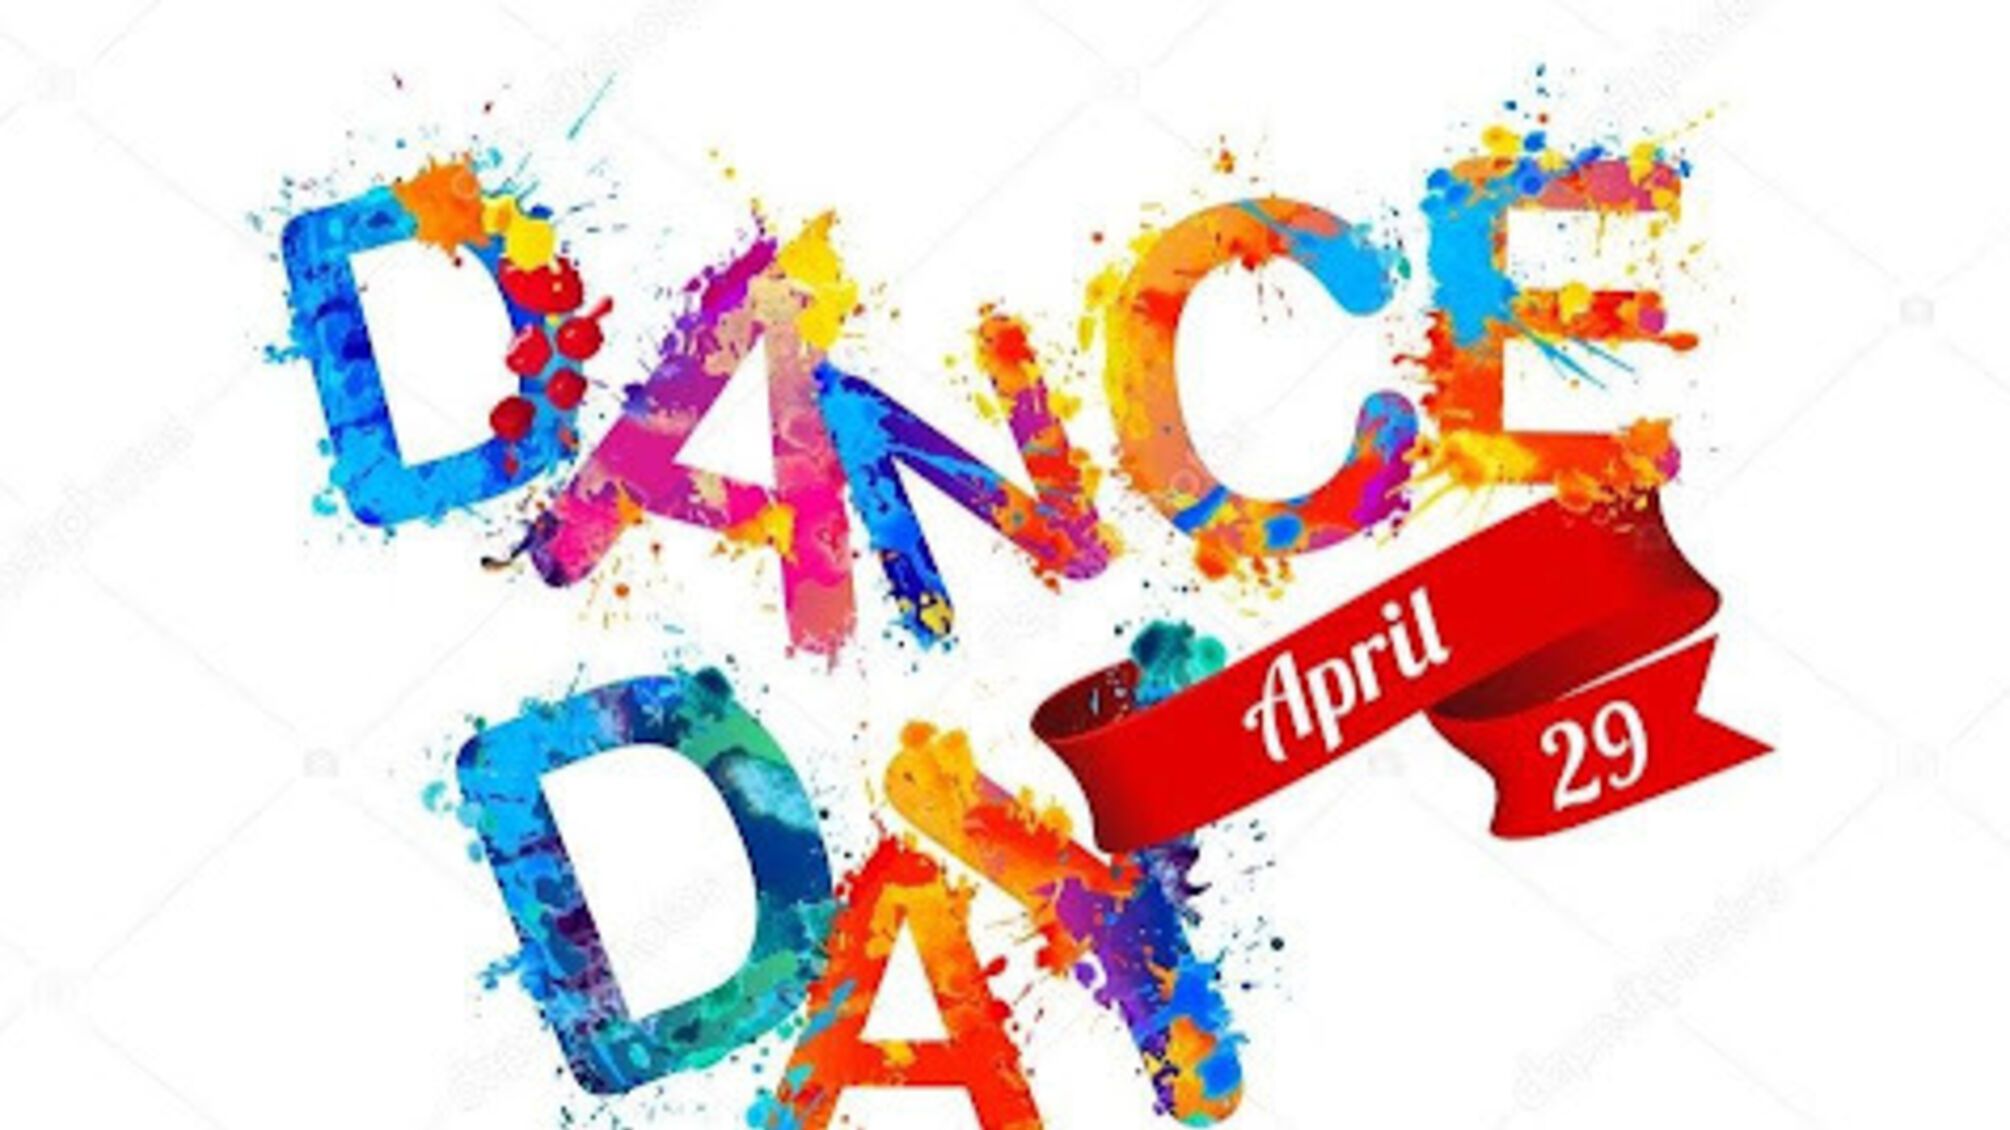 29 апреля – Международный день танца